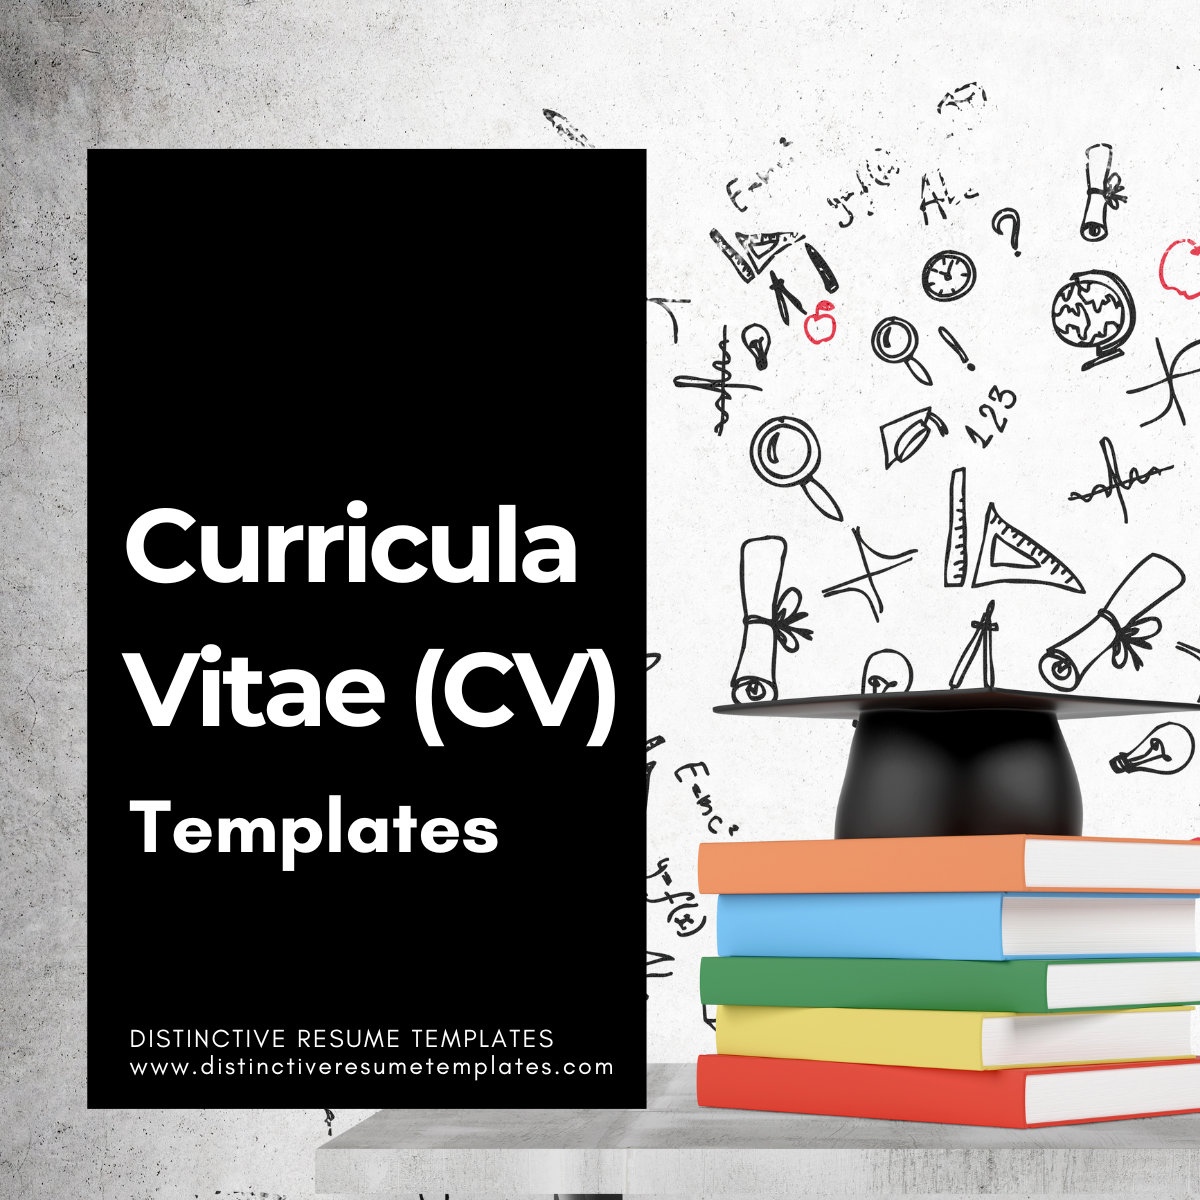 Curricula Vitae CV Templates